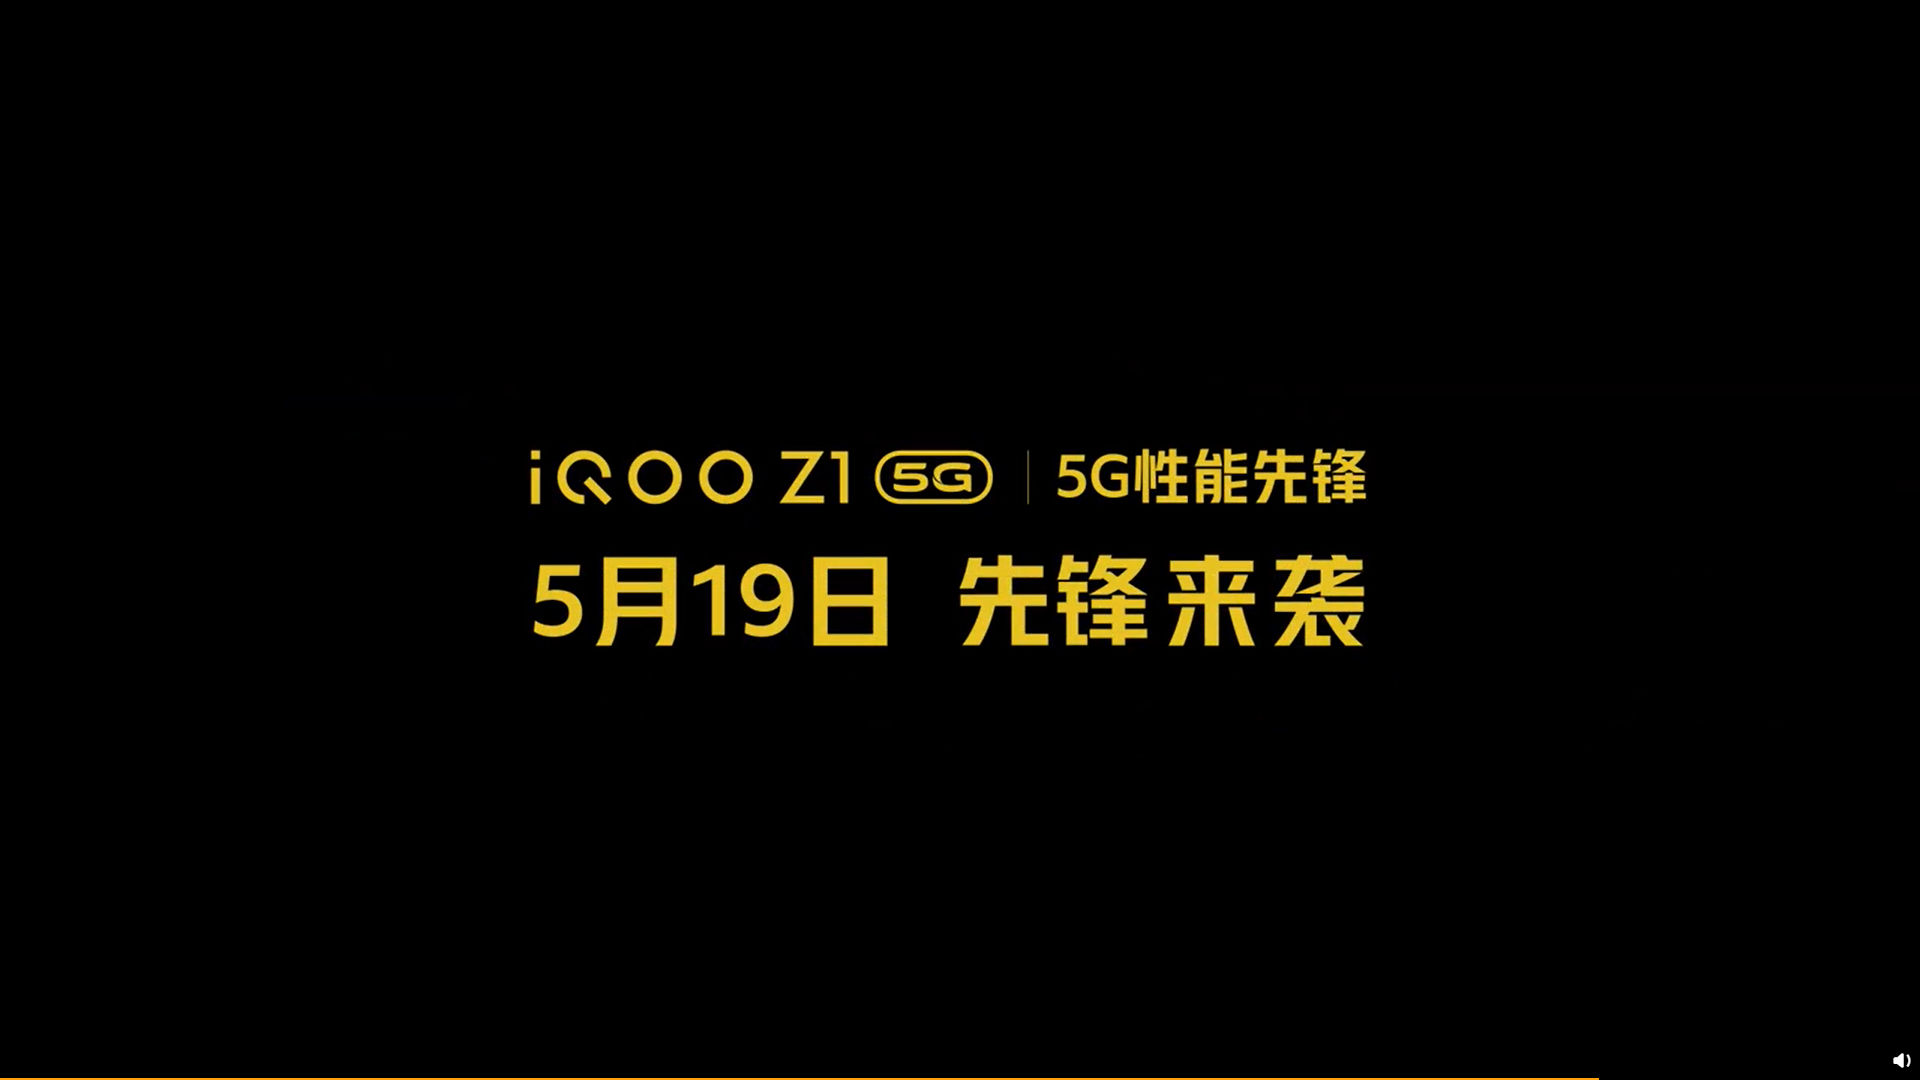 إعلان تاريخ إطلاق iQOO Z1 "العرض =" 1920 "الارتفاع =" 1080